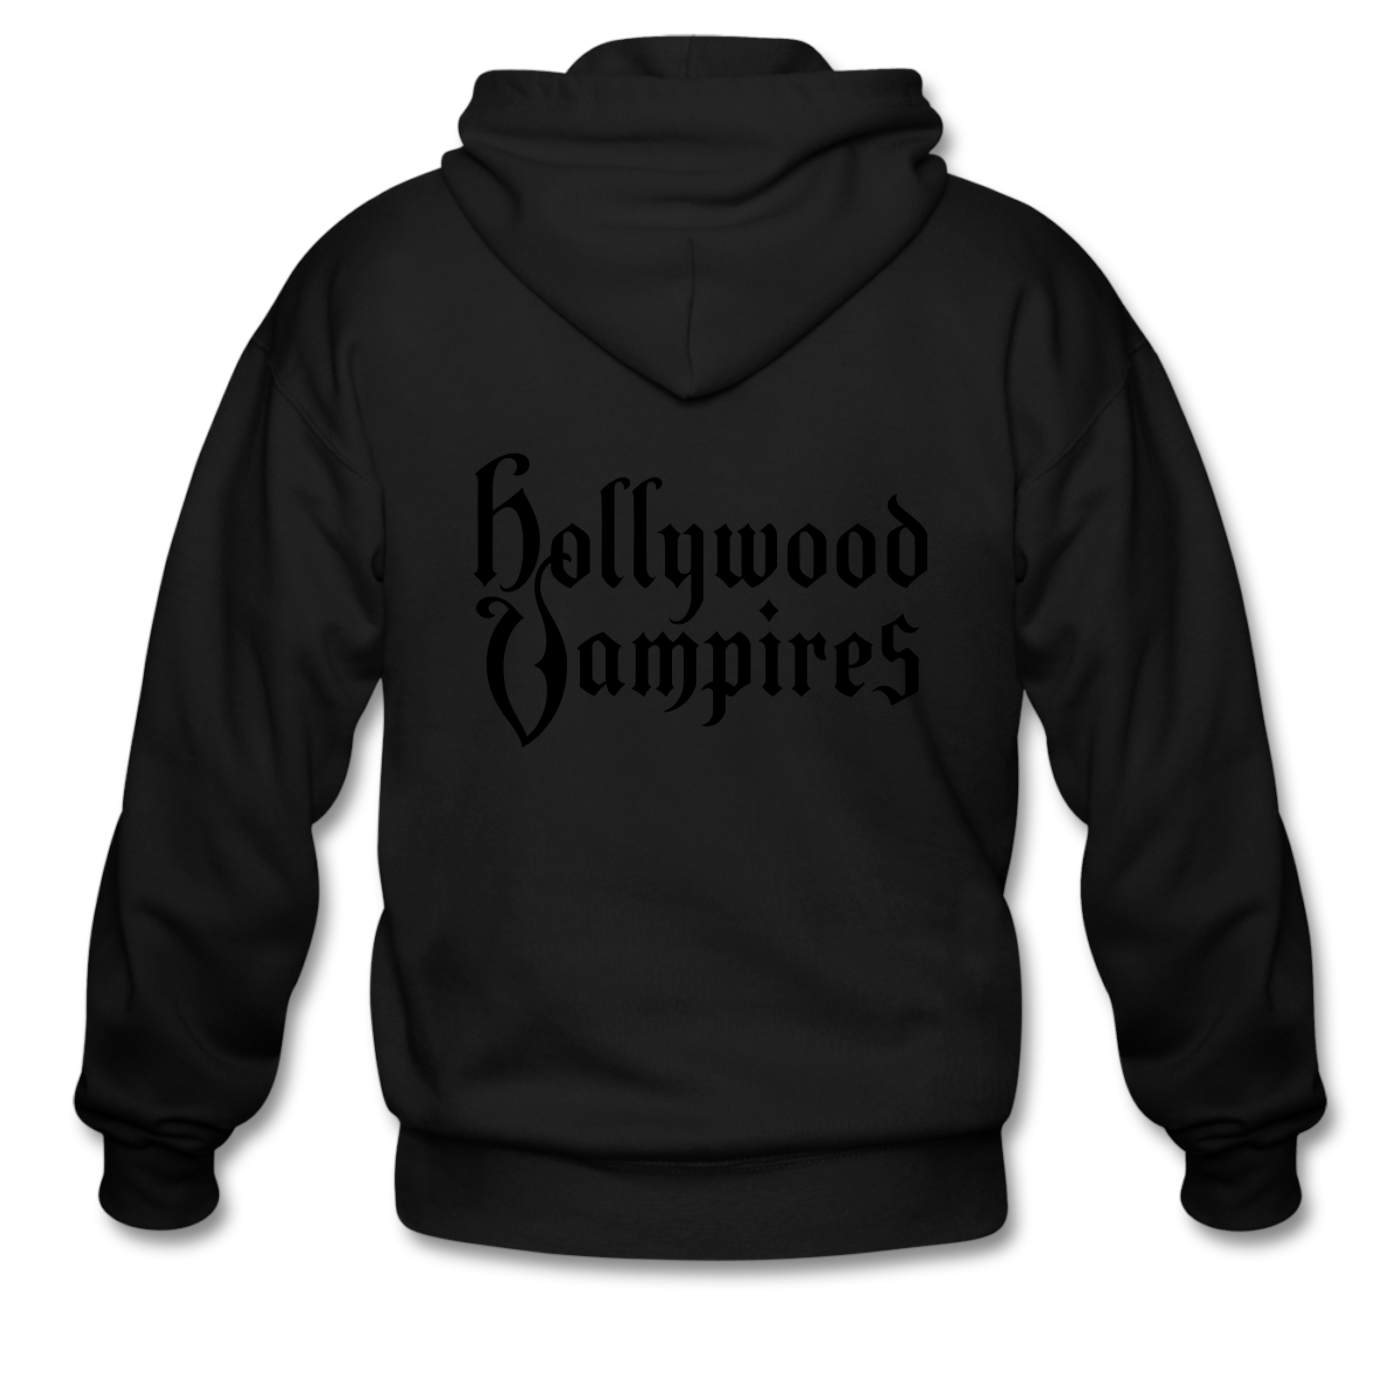 Hollywood Vampires Black on Black (zip hoodie)